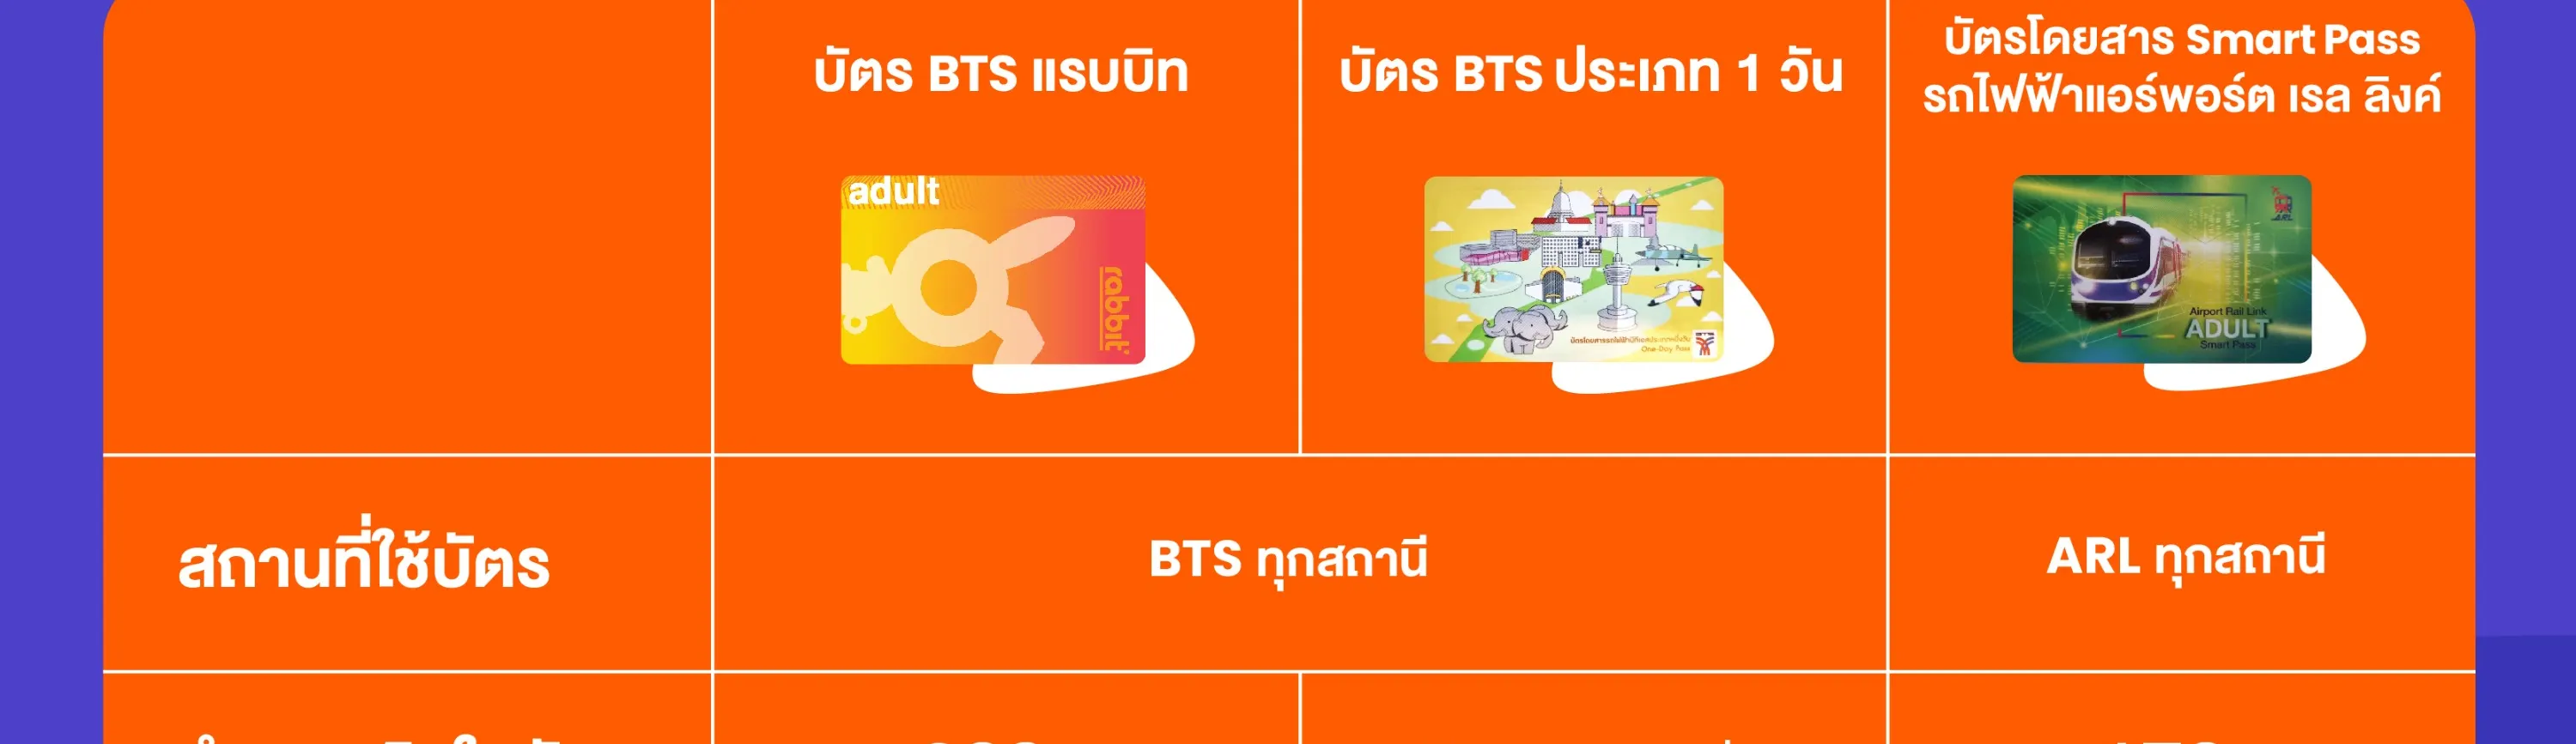 บัตรโดยสารรถไฟฟ้า Bts ประเภทหนึ่งวัน - Klook ประเทศไทย